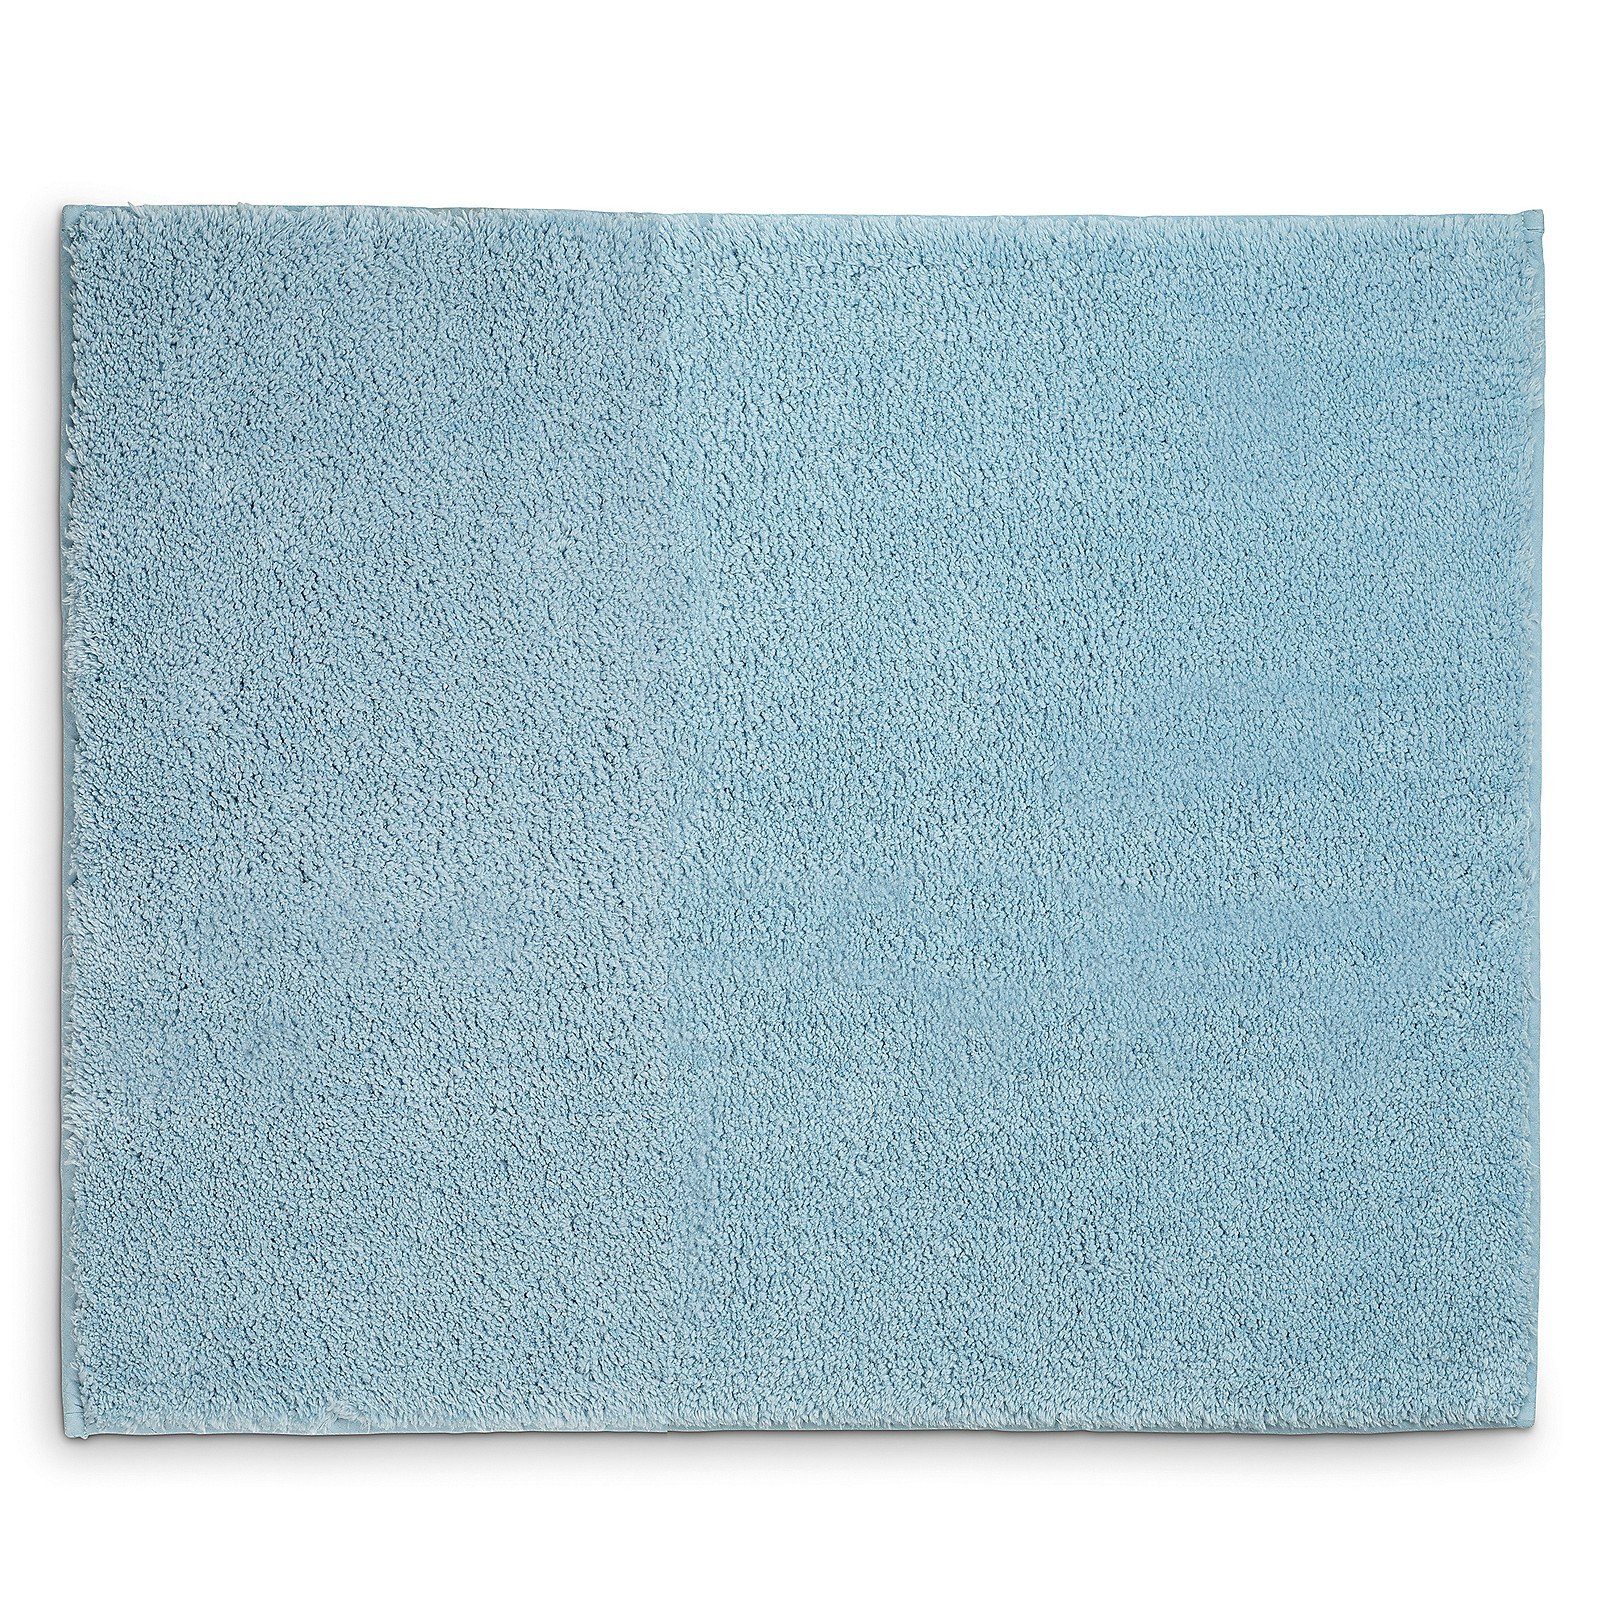 Badematte Maja kela, Höhe 15 mm, 100% Polyester, rutschhemmend, bei 30°C waschbar, für Fußbodenheizung geeignet